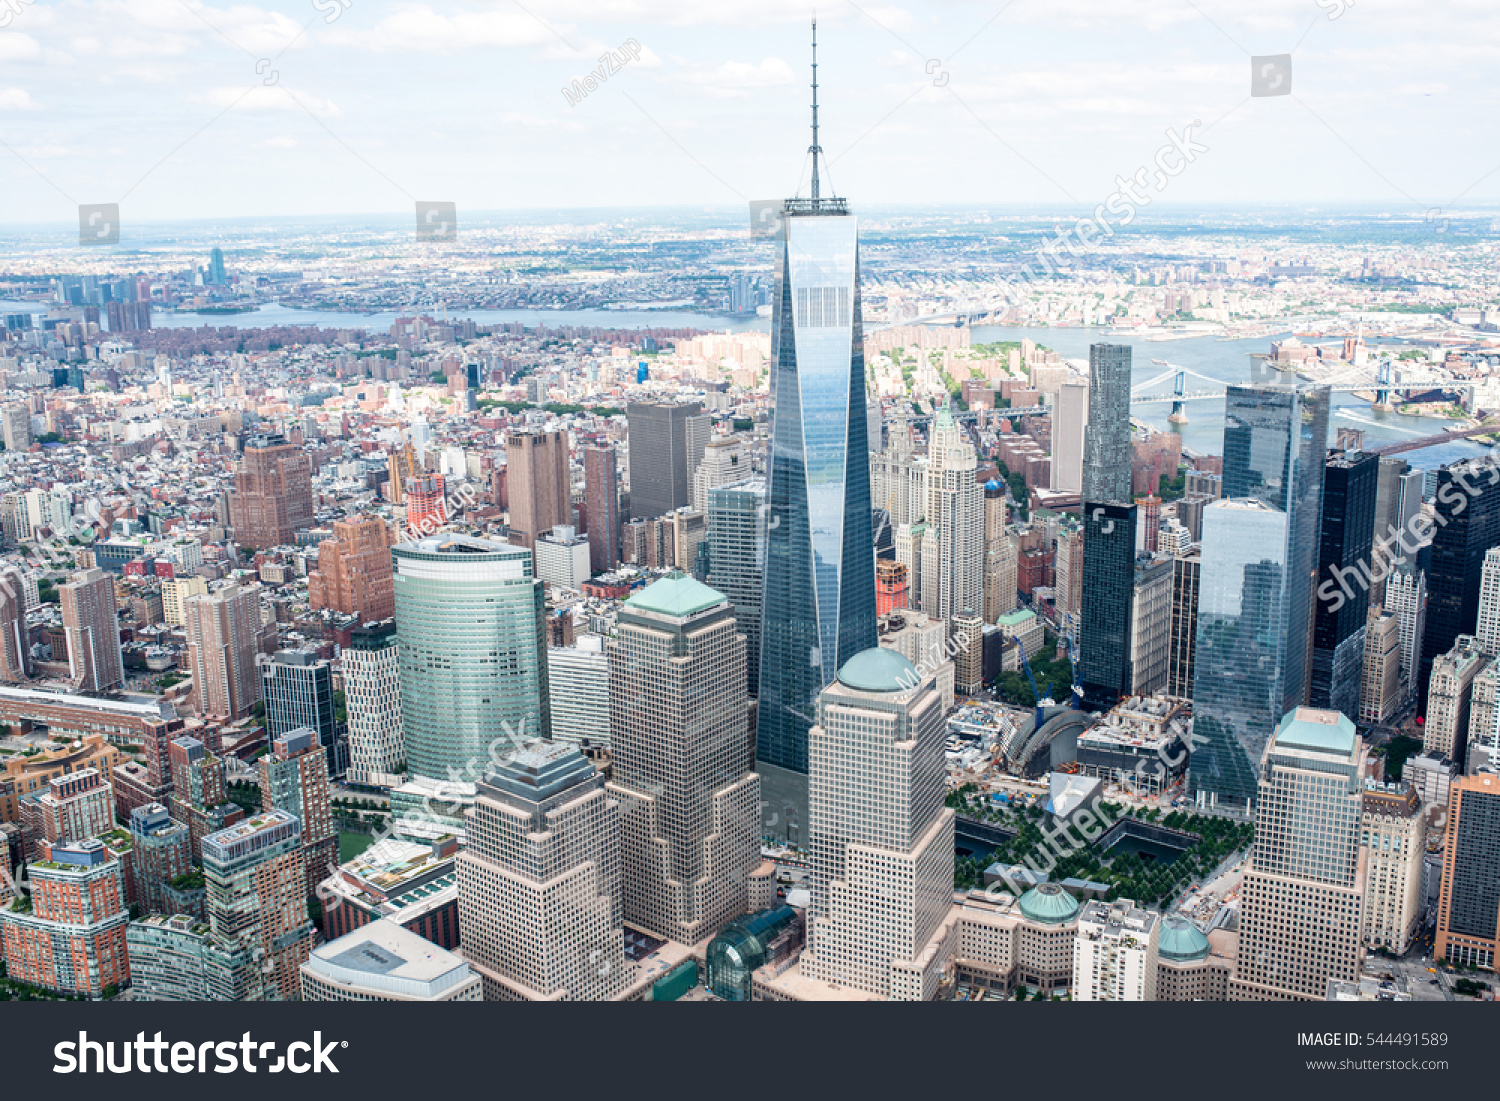 Manhattan from the air #544491589